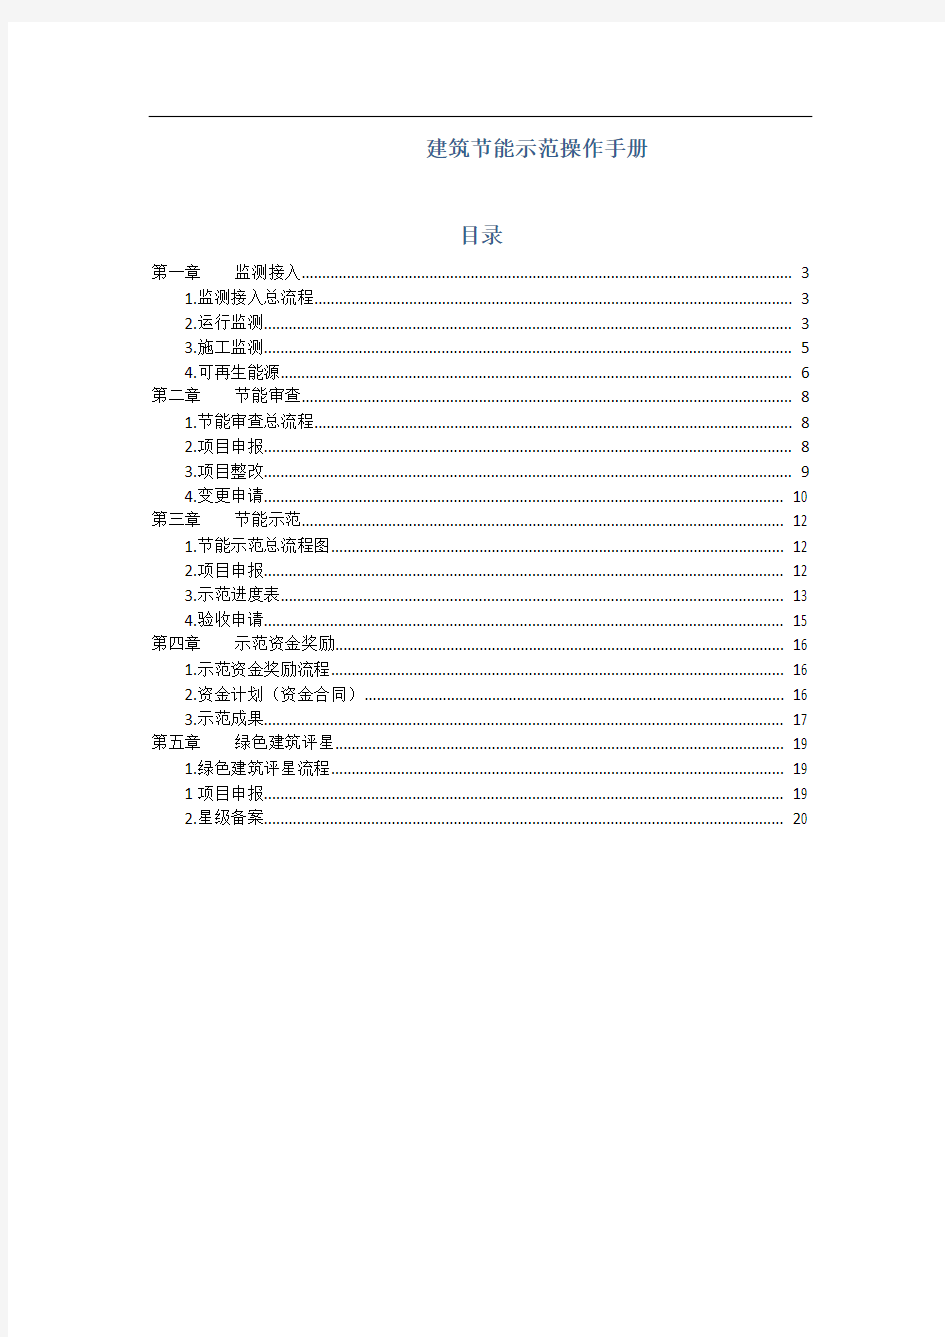 杭州市建筑节能信息管理平台业务系统操作手册